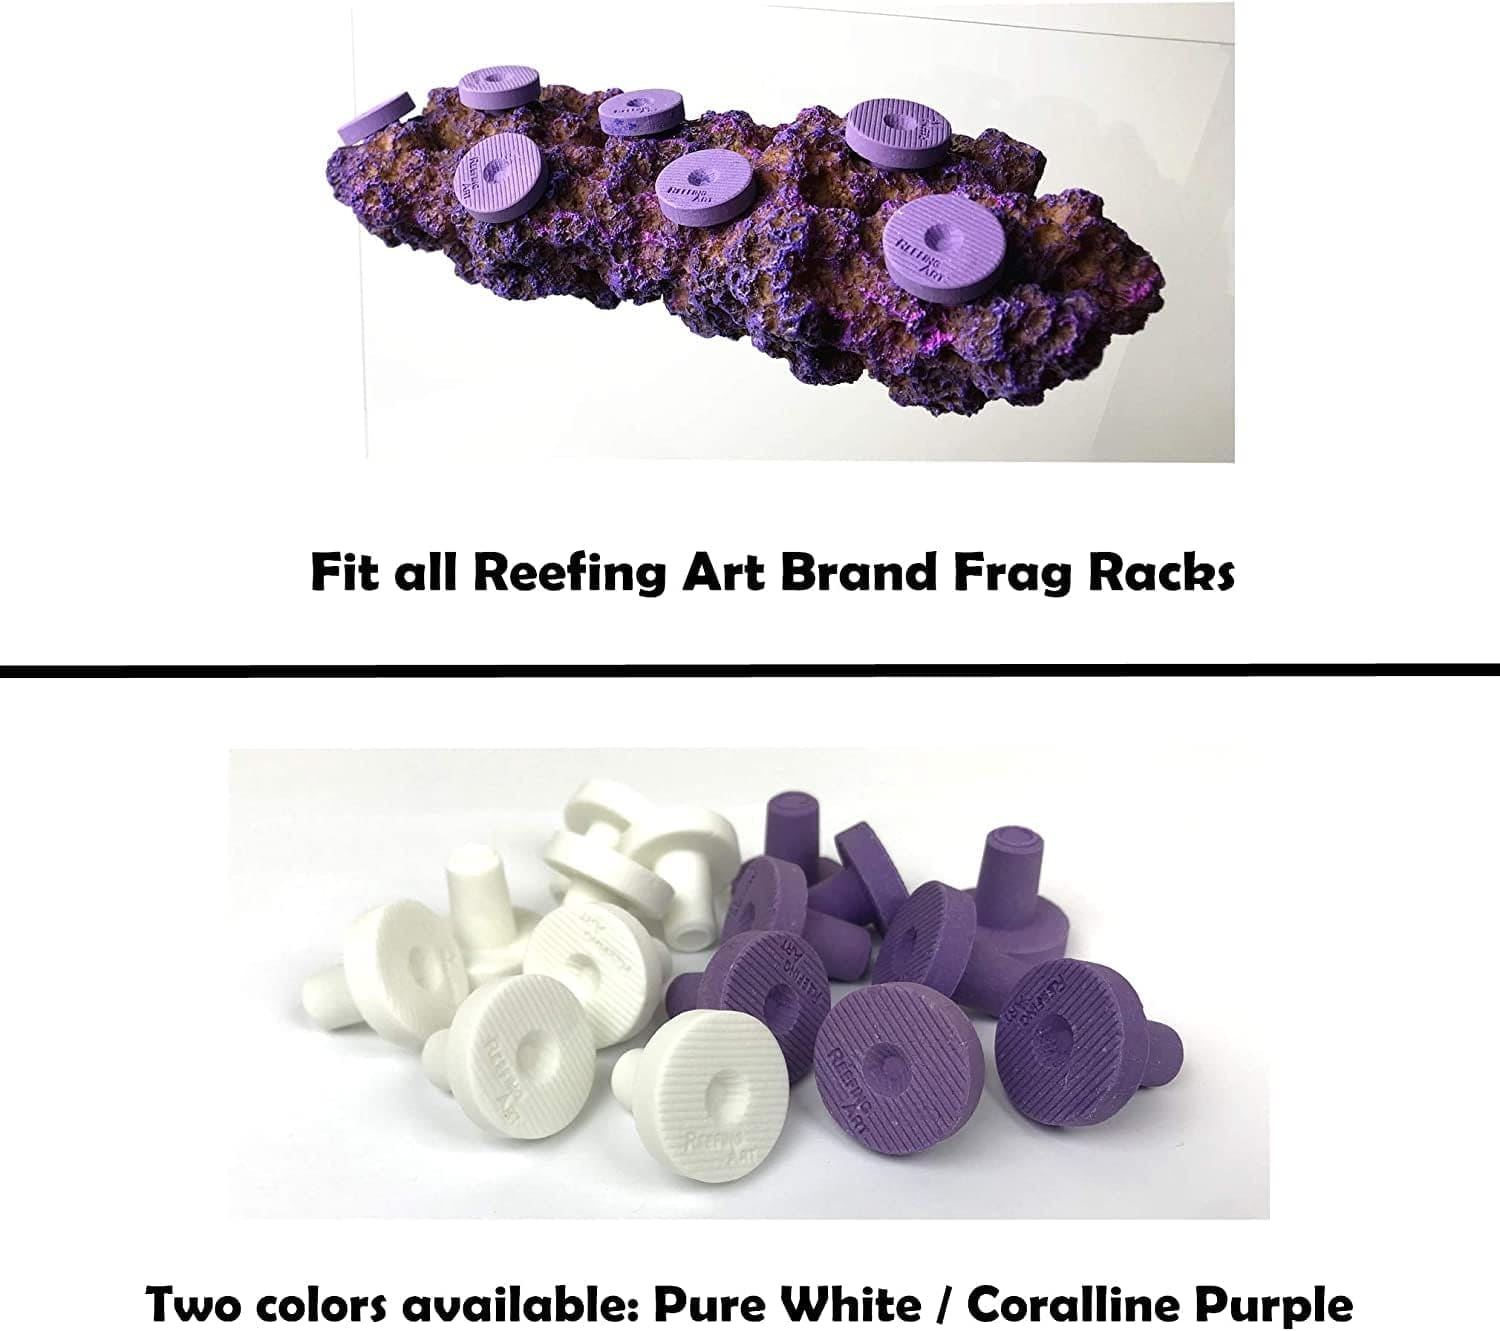 Ceramic Coralline Purple Coral Frag Plugs 100 Pack Free Aquarium Glue for SPS LPS